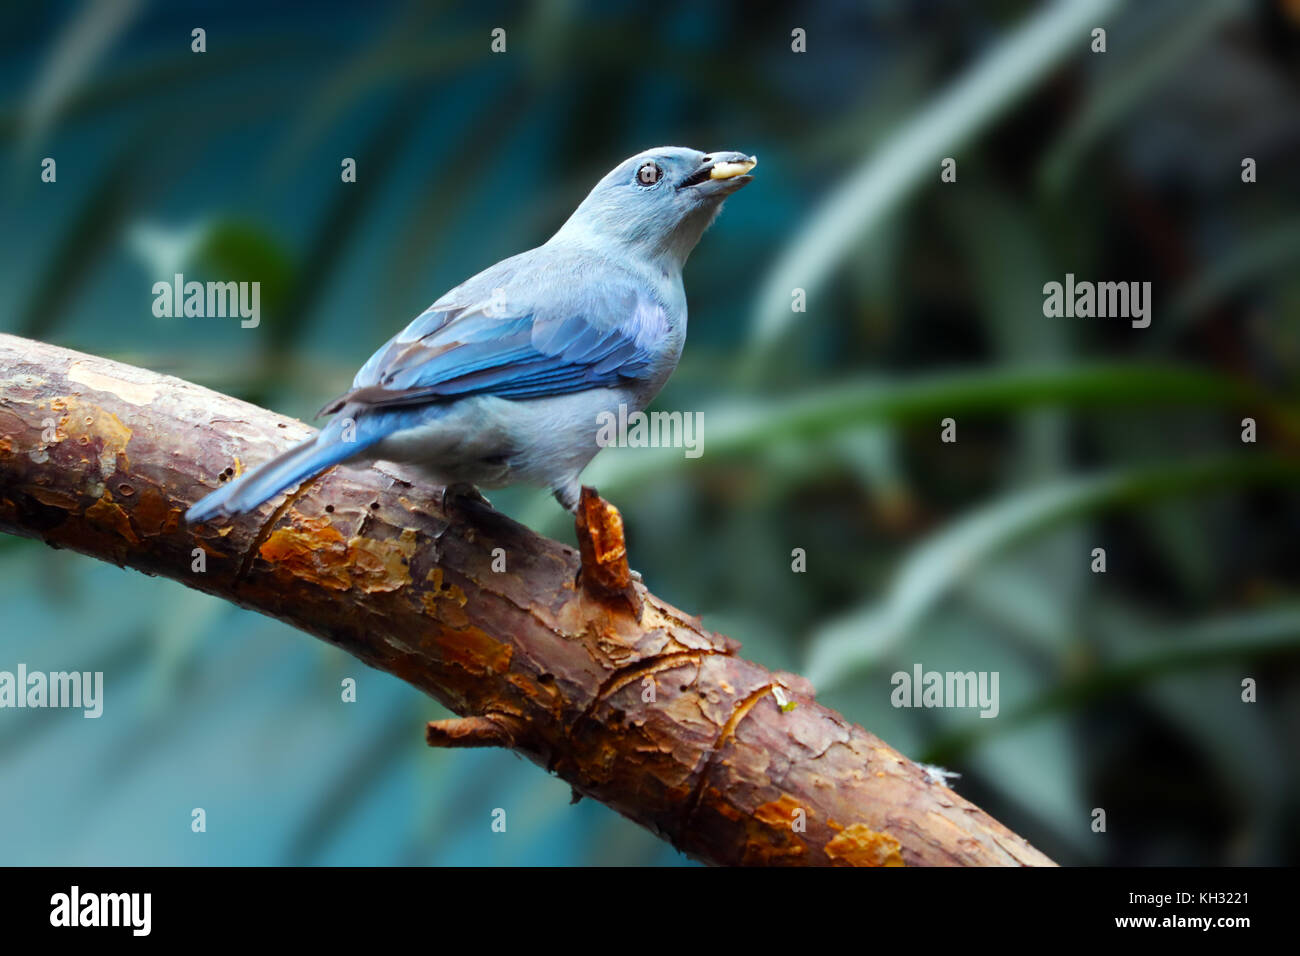 Blau-grau tanager Vogel Holding ein Stück Obst in seinem Schnabel sitzt auf einem Ast Stockfoto